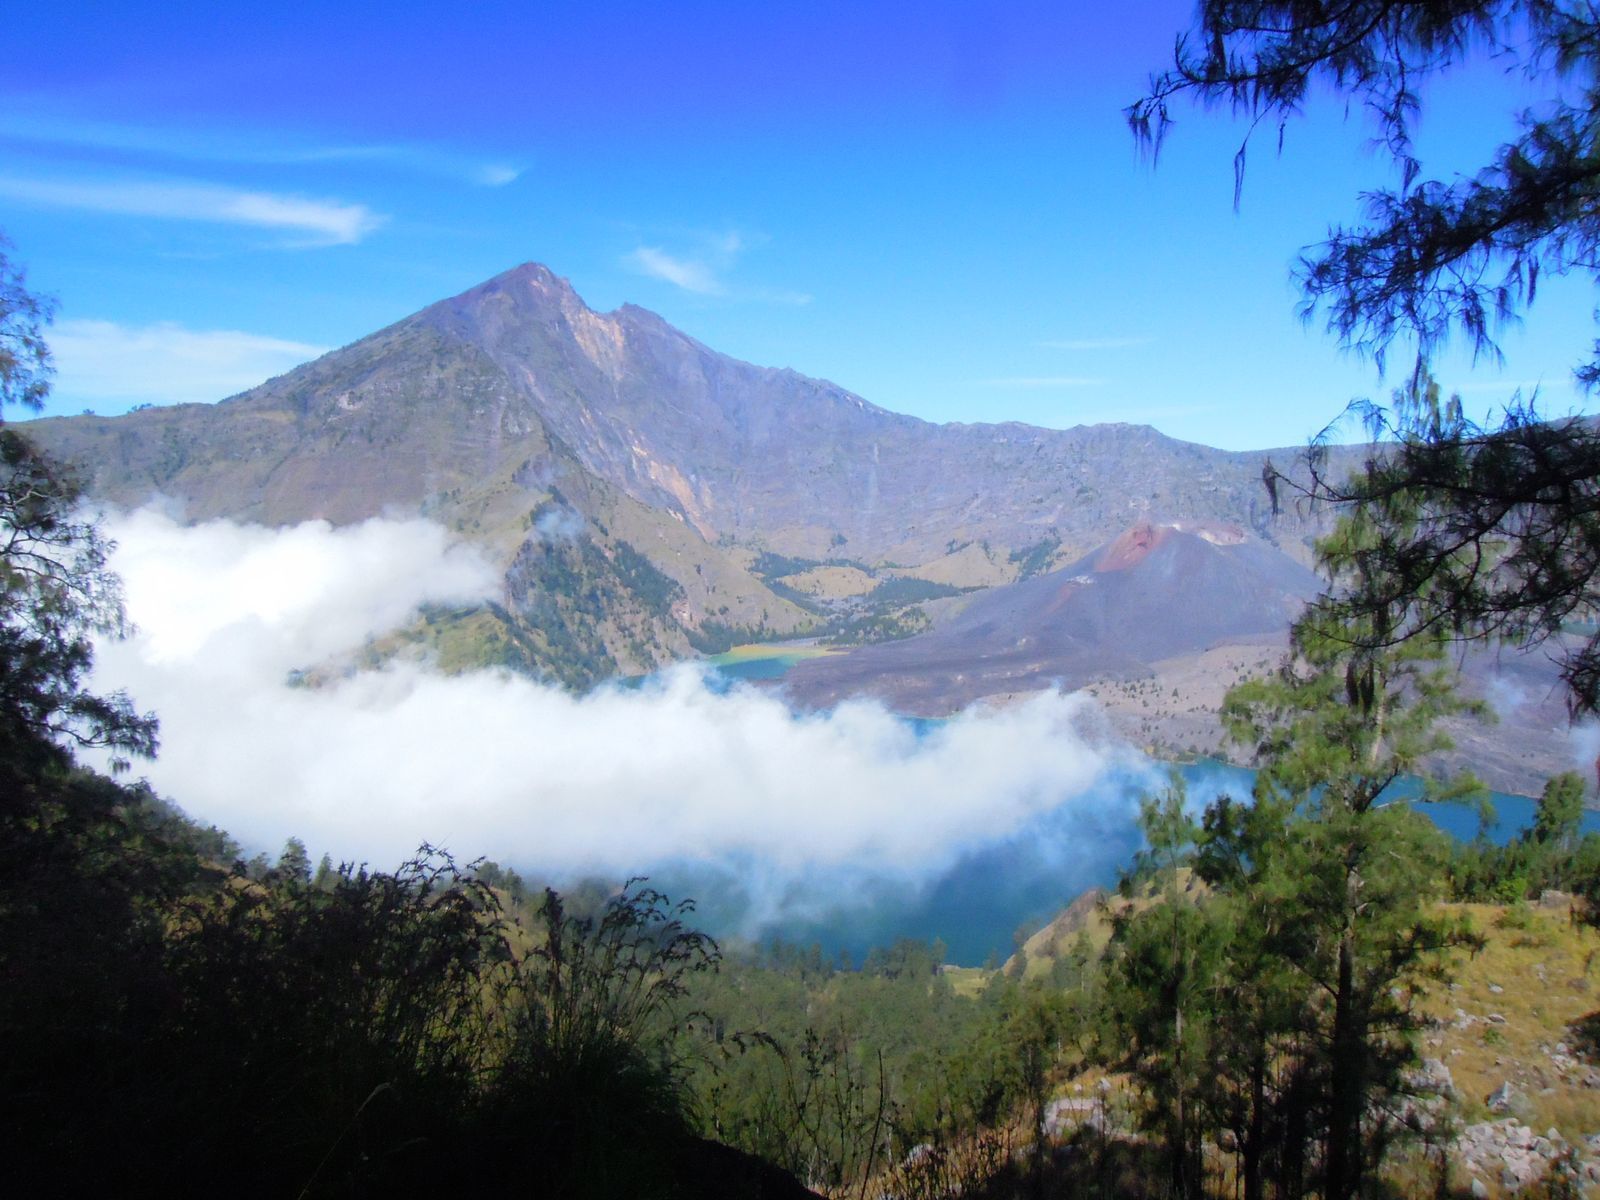 Ломбок, Lombok, Ринджани, Rindzhani